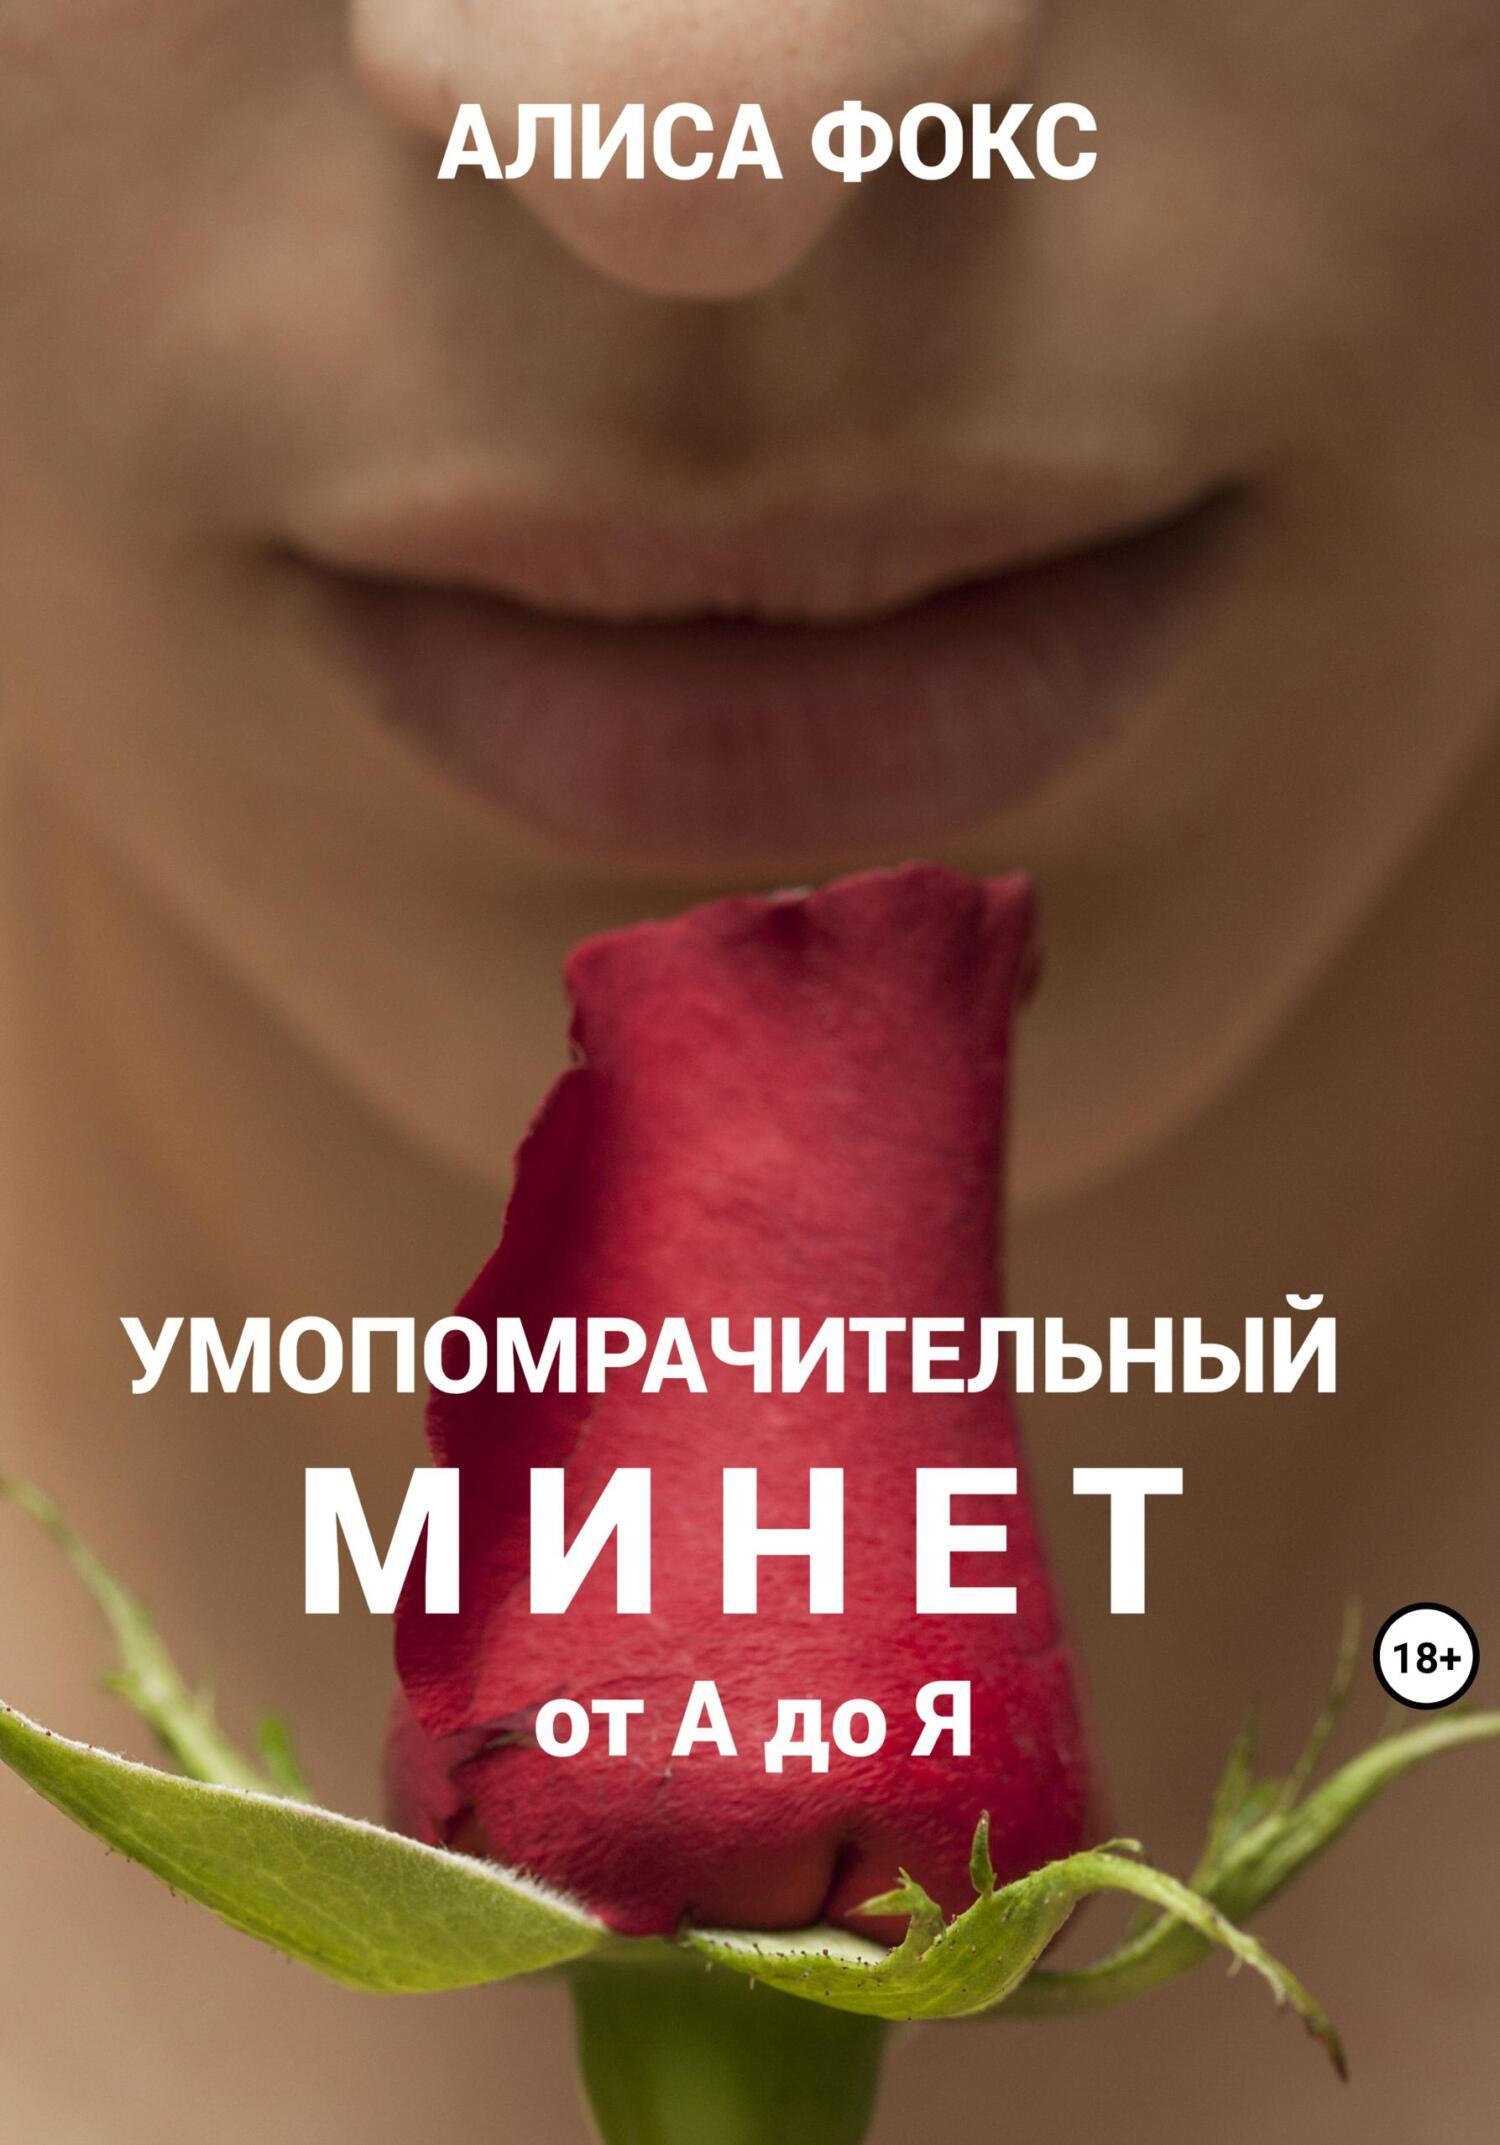 Девушка с настоящим членом трахает девушку - порно видео на riosalon.ru